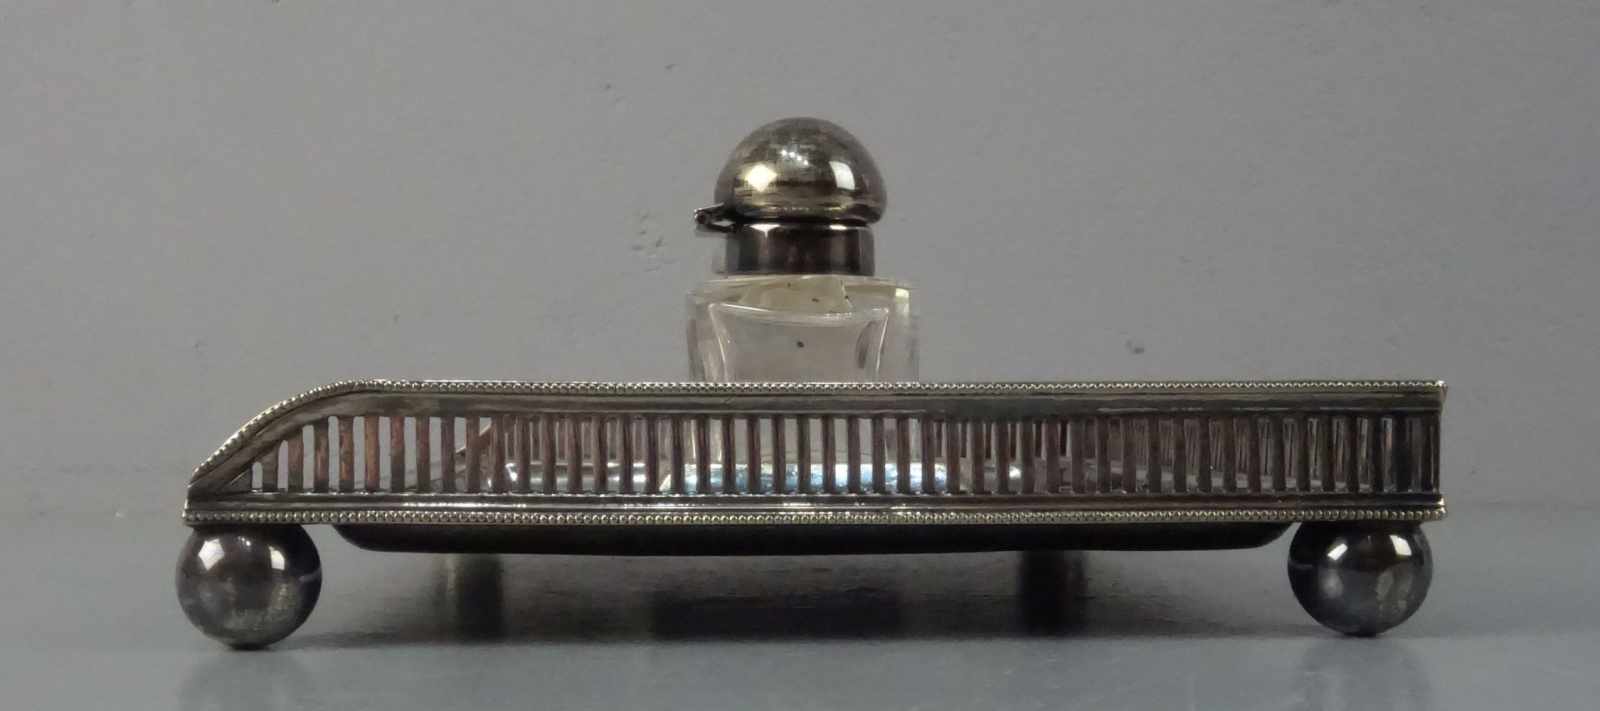 TINTENFASS / SCHREIBTISCHAUFSATZ / inkstand, versilbertes Metall und Kristallglas, wohl - Image 3 of 3